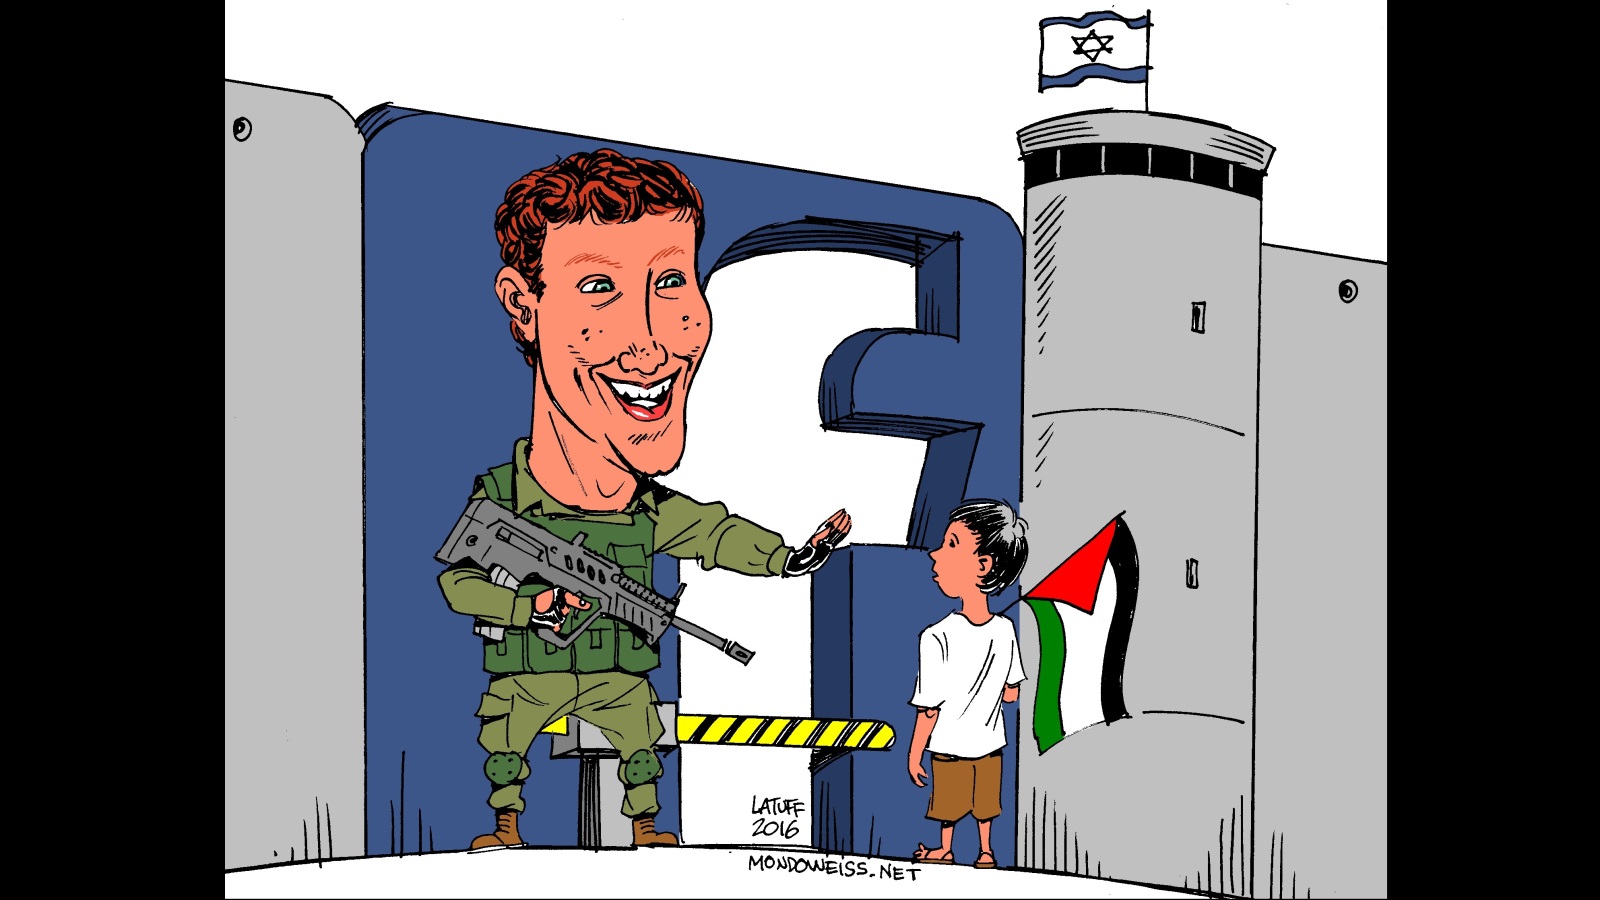 رسم ساخر يصور رئيس فيسبوك بلباس جندي إسرائيلي يمنع فلسطينيا من دخول بوابة قلعة فيسبوك (مواقع التواصل الاجتماعي)